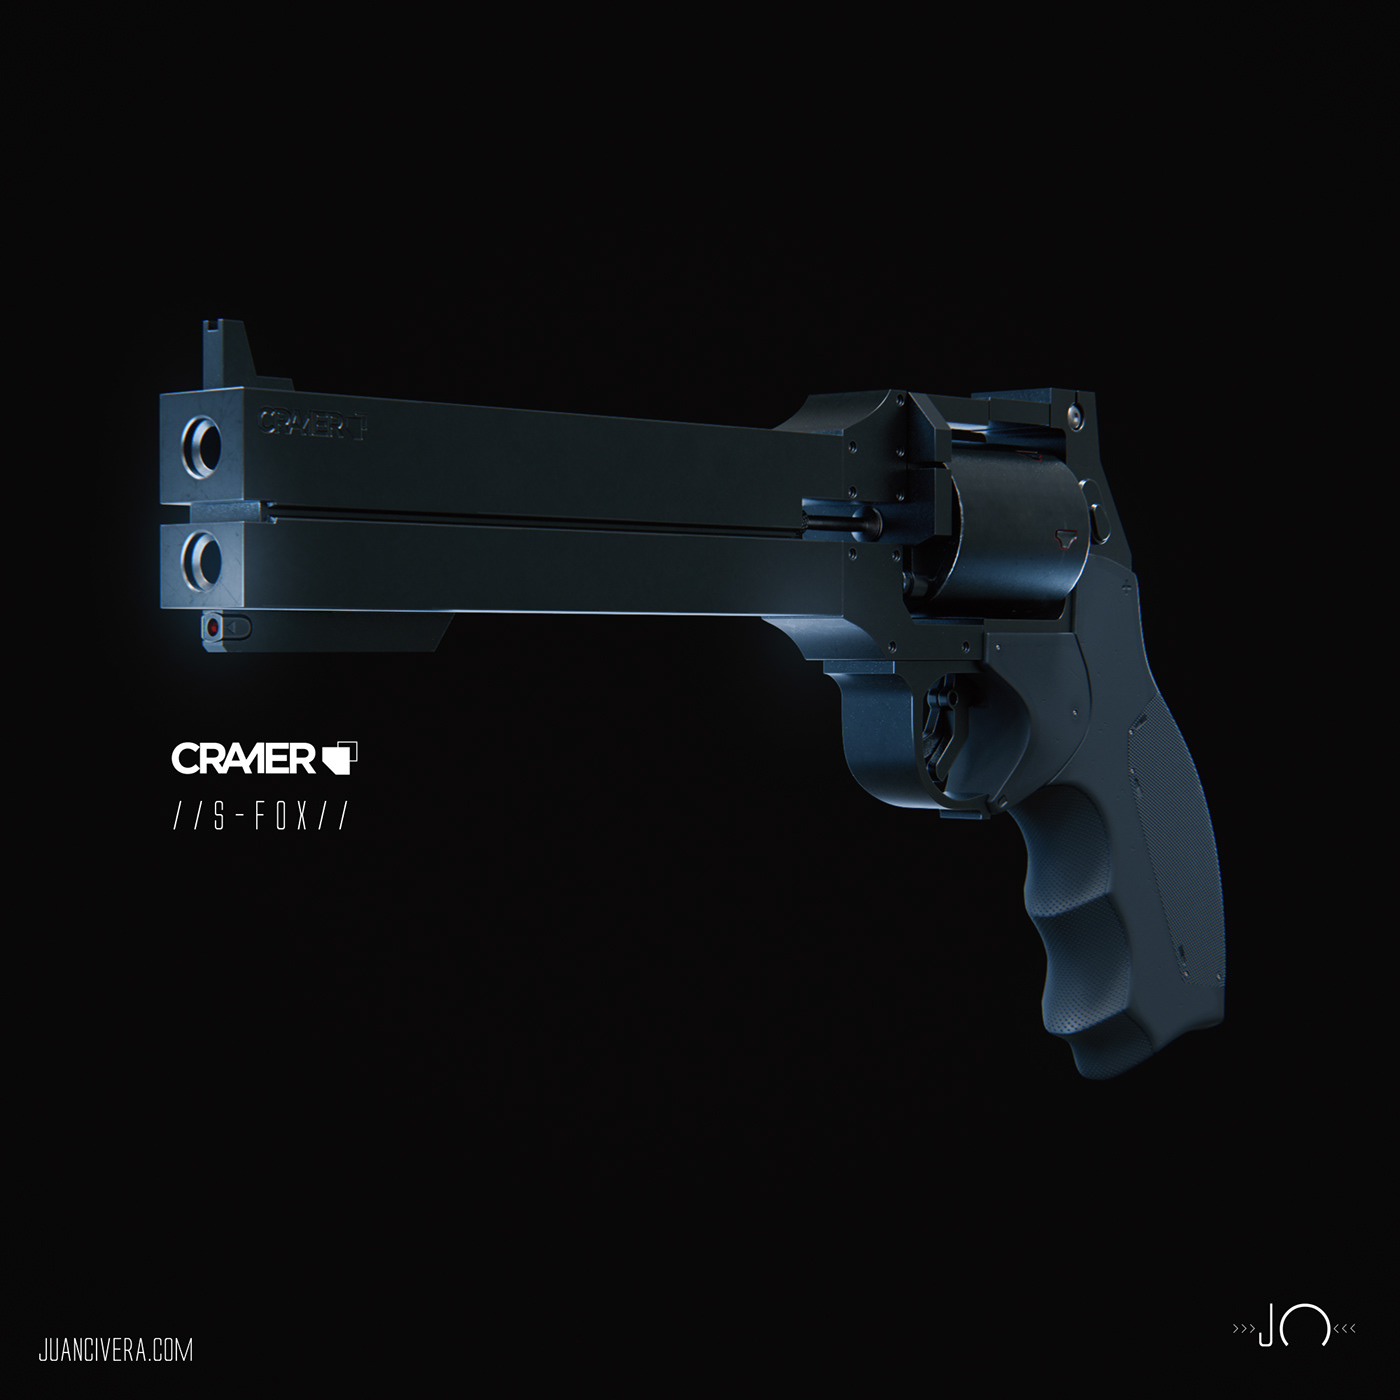 Weapon uzi Colt katana knife Juan Civera Cyberpunk Sci Fi CGI 3D